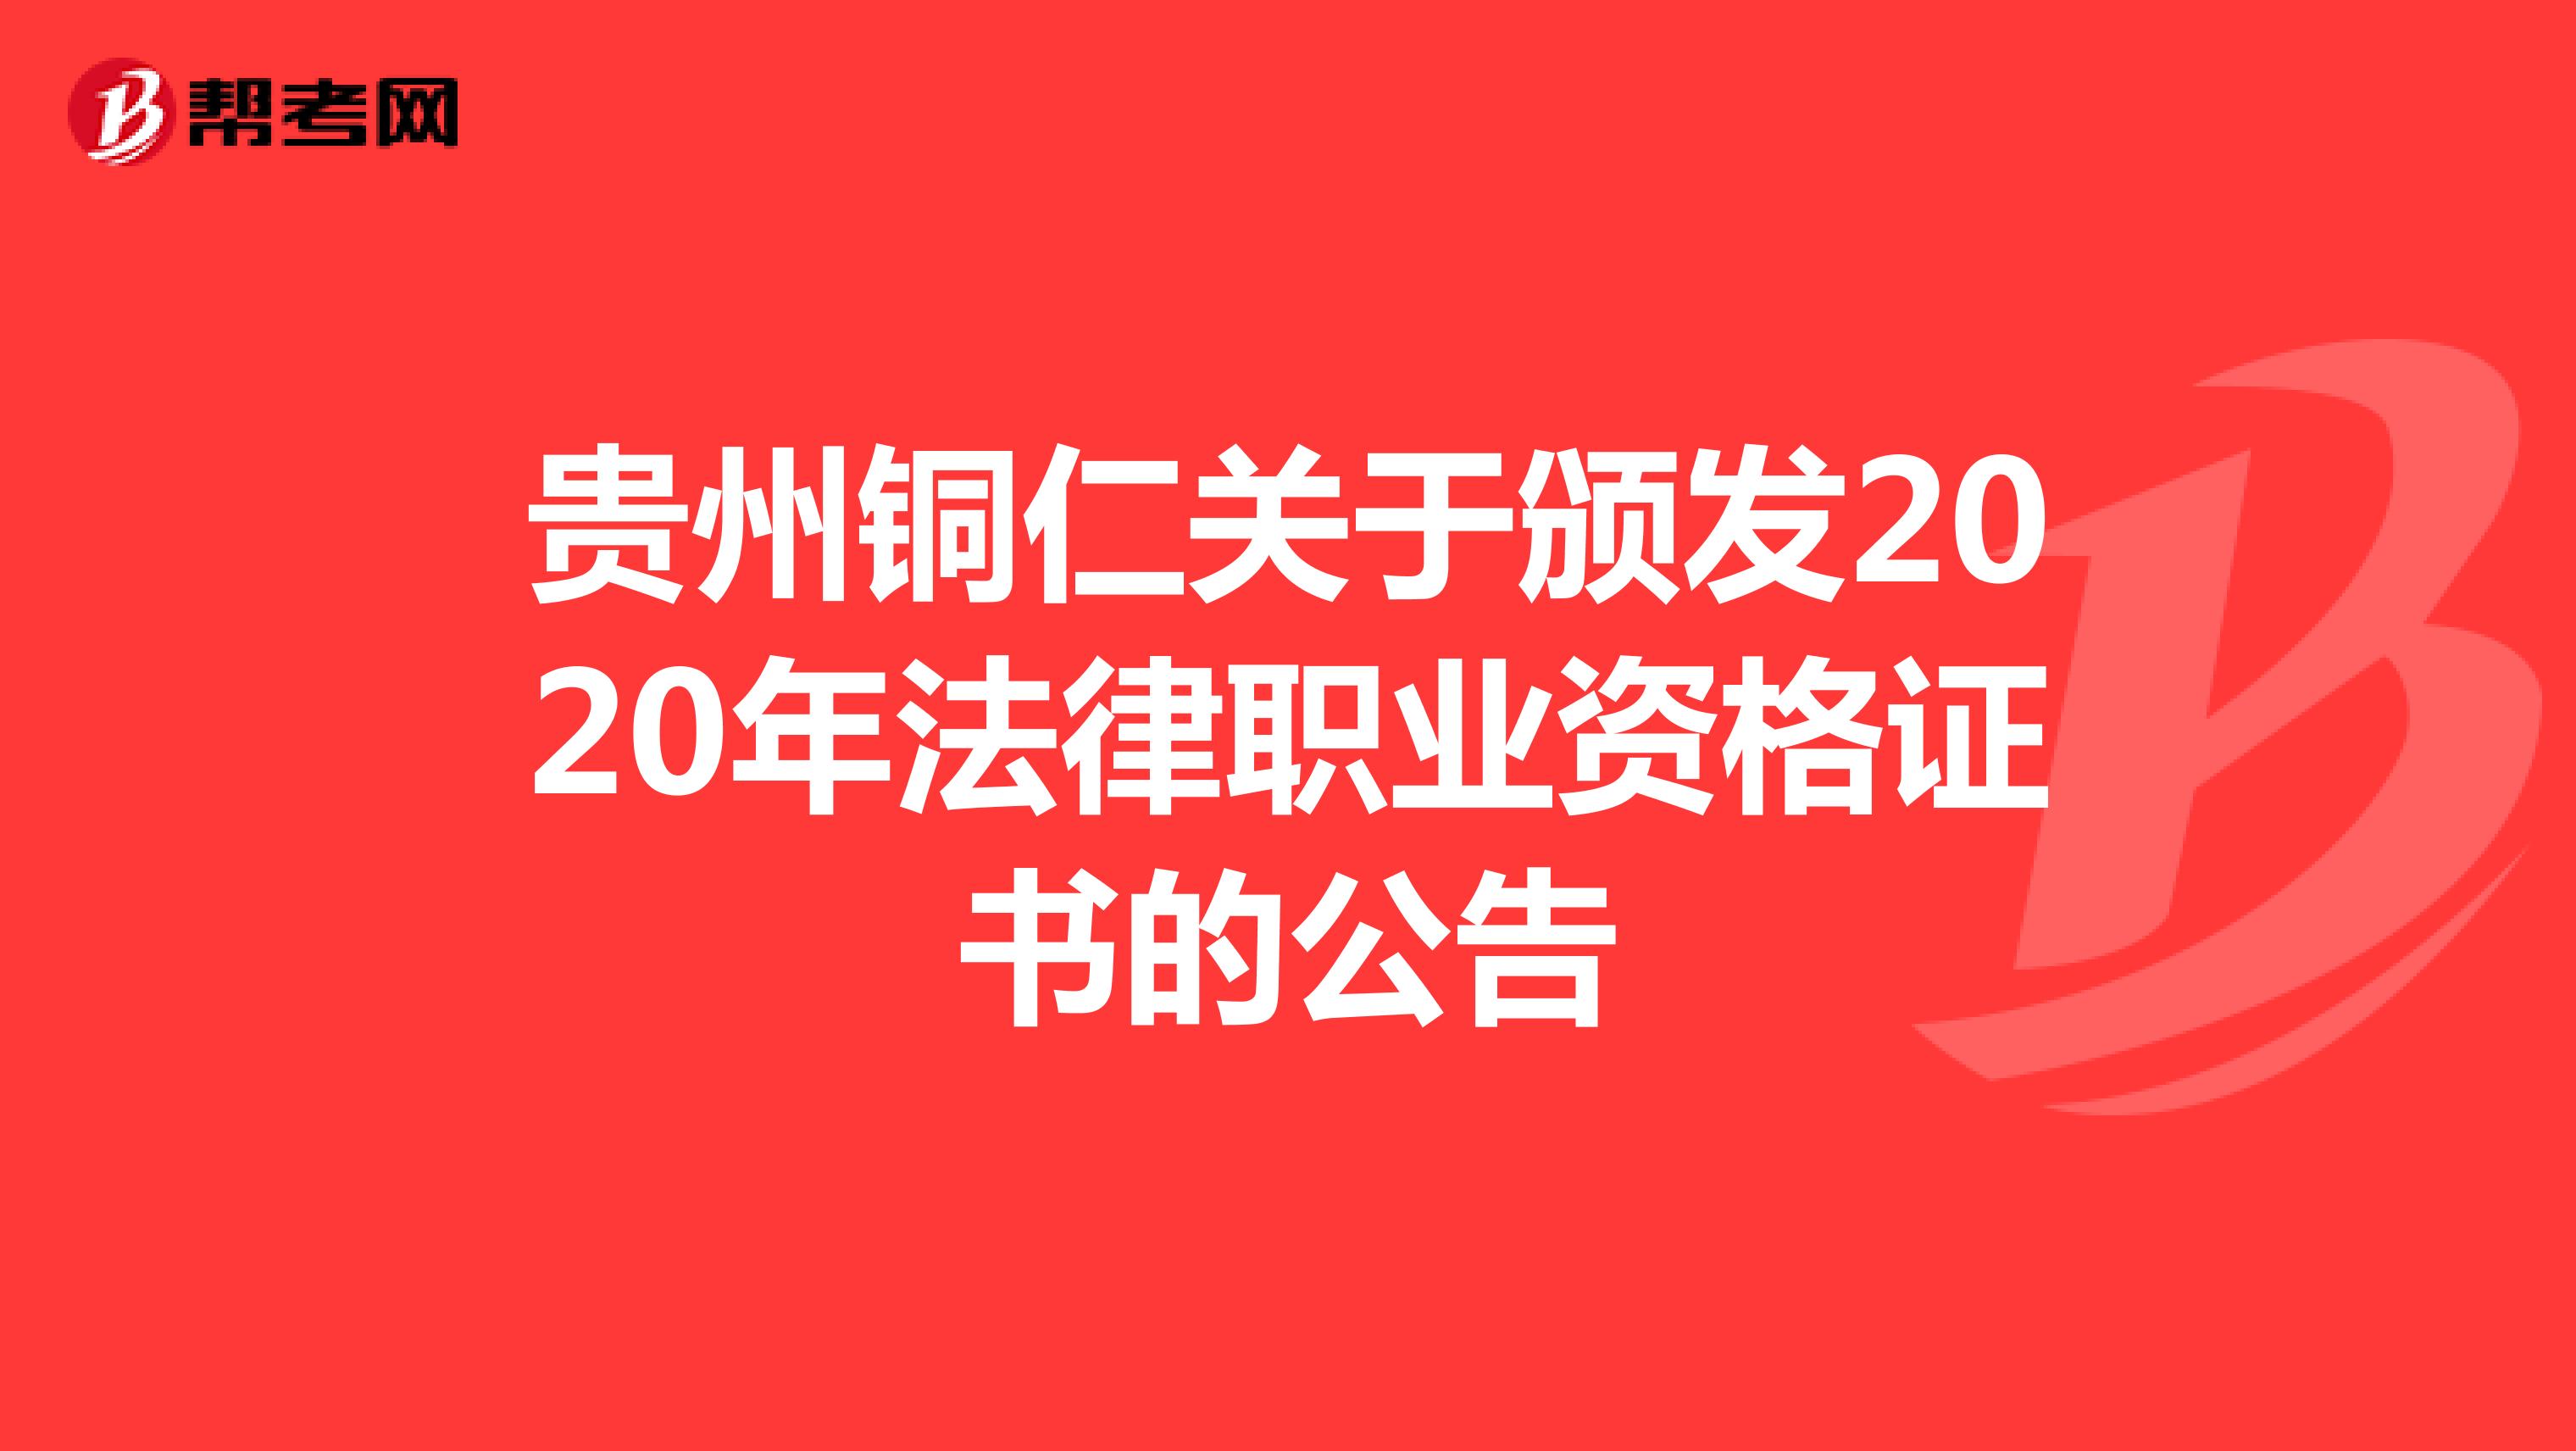 贵州铜仁关于颁发2020年法律职业资格证书的公告